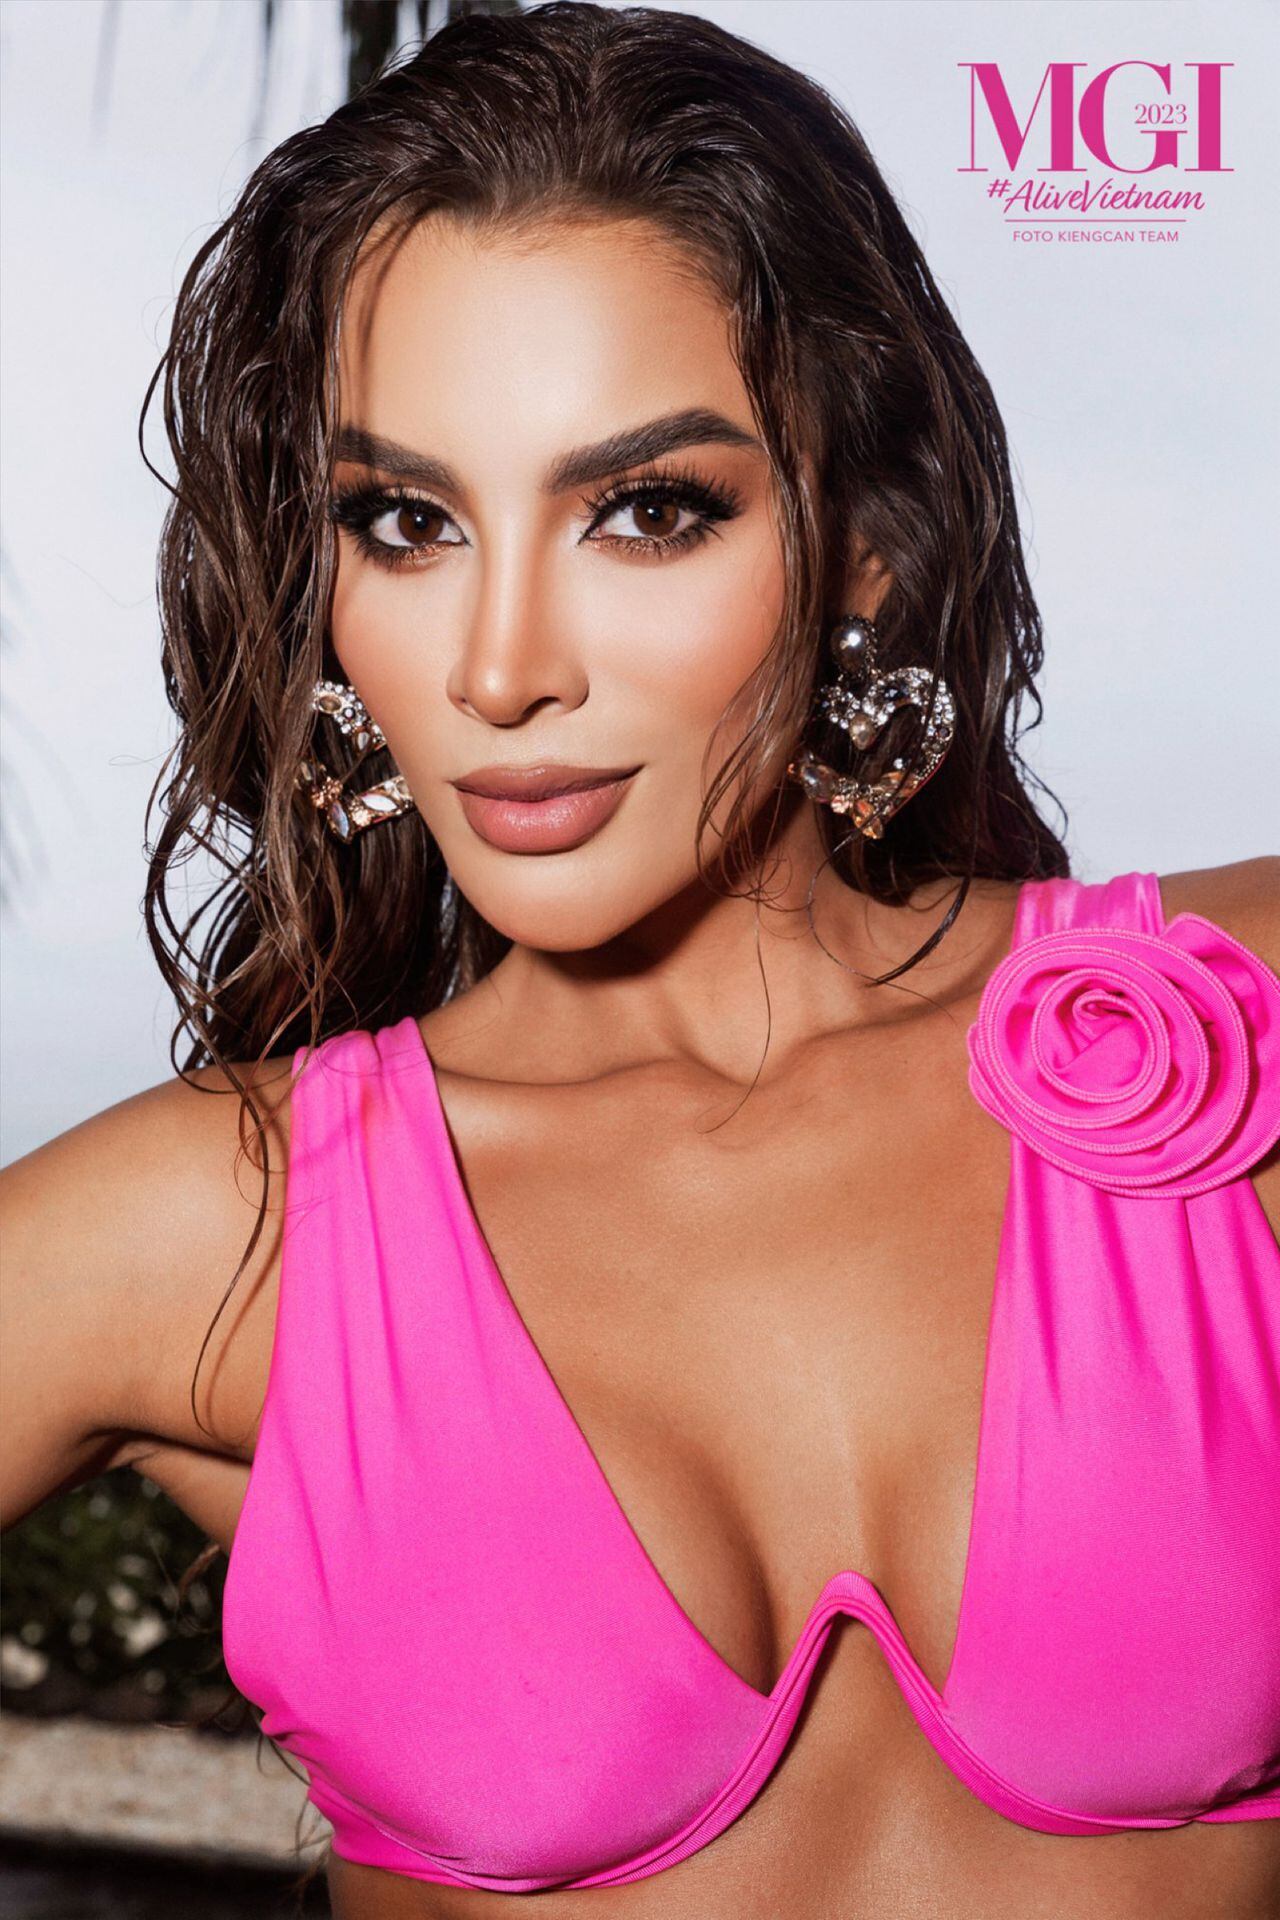 La colombiana ha participado en varios concursos de belleza, ‘Maleja’ como le dicen sus fans, fue la primera finalista en el concurso nacional de la belleza de 2013.